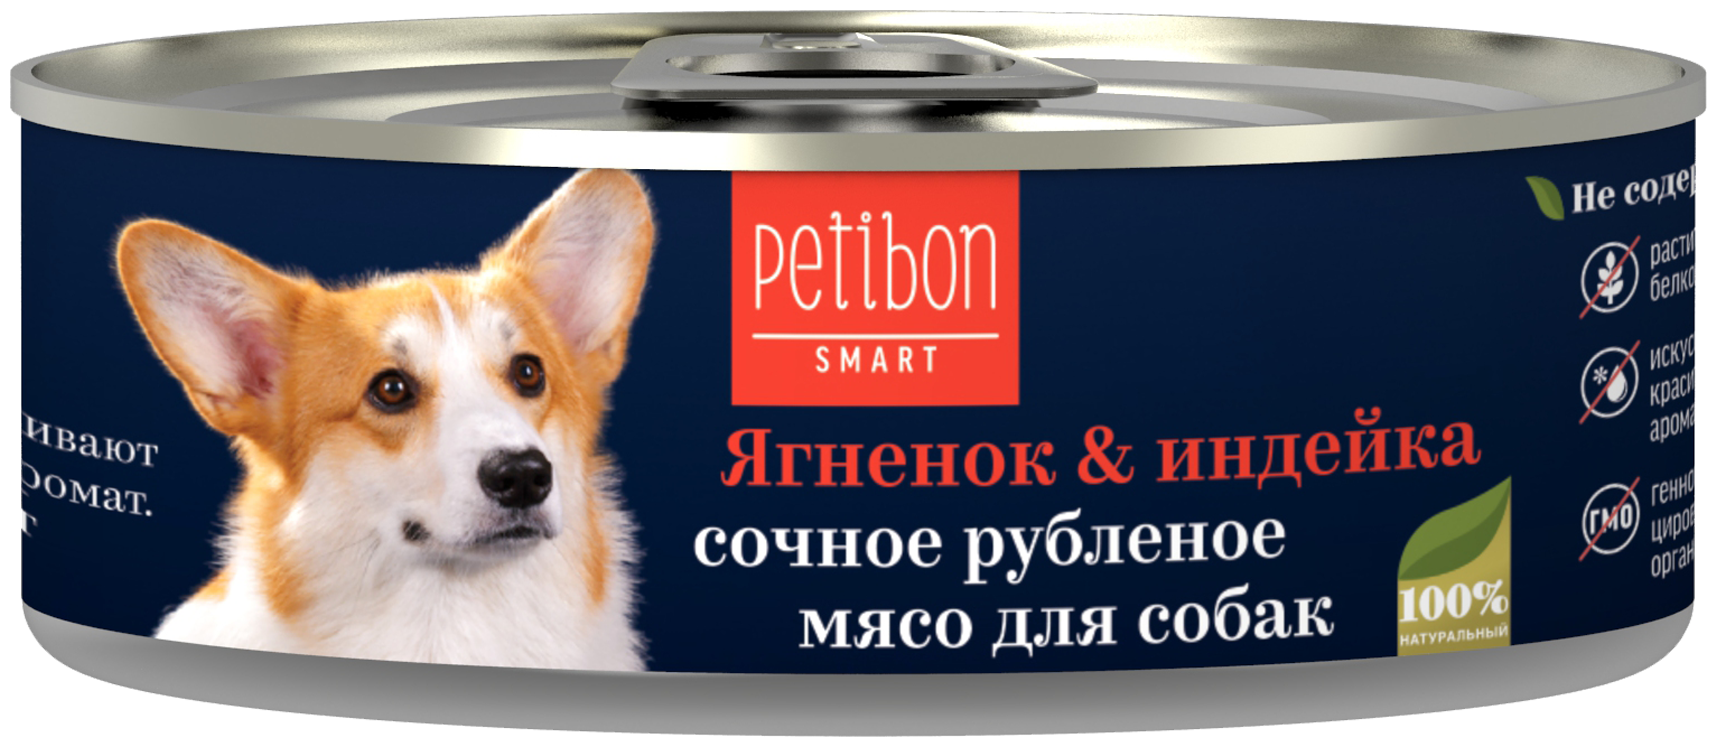 Petibon Smart влажный корм для собак всех пород и возрастов, ягненок и индейка 100 гр (2 шт)